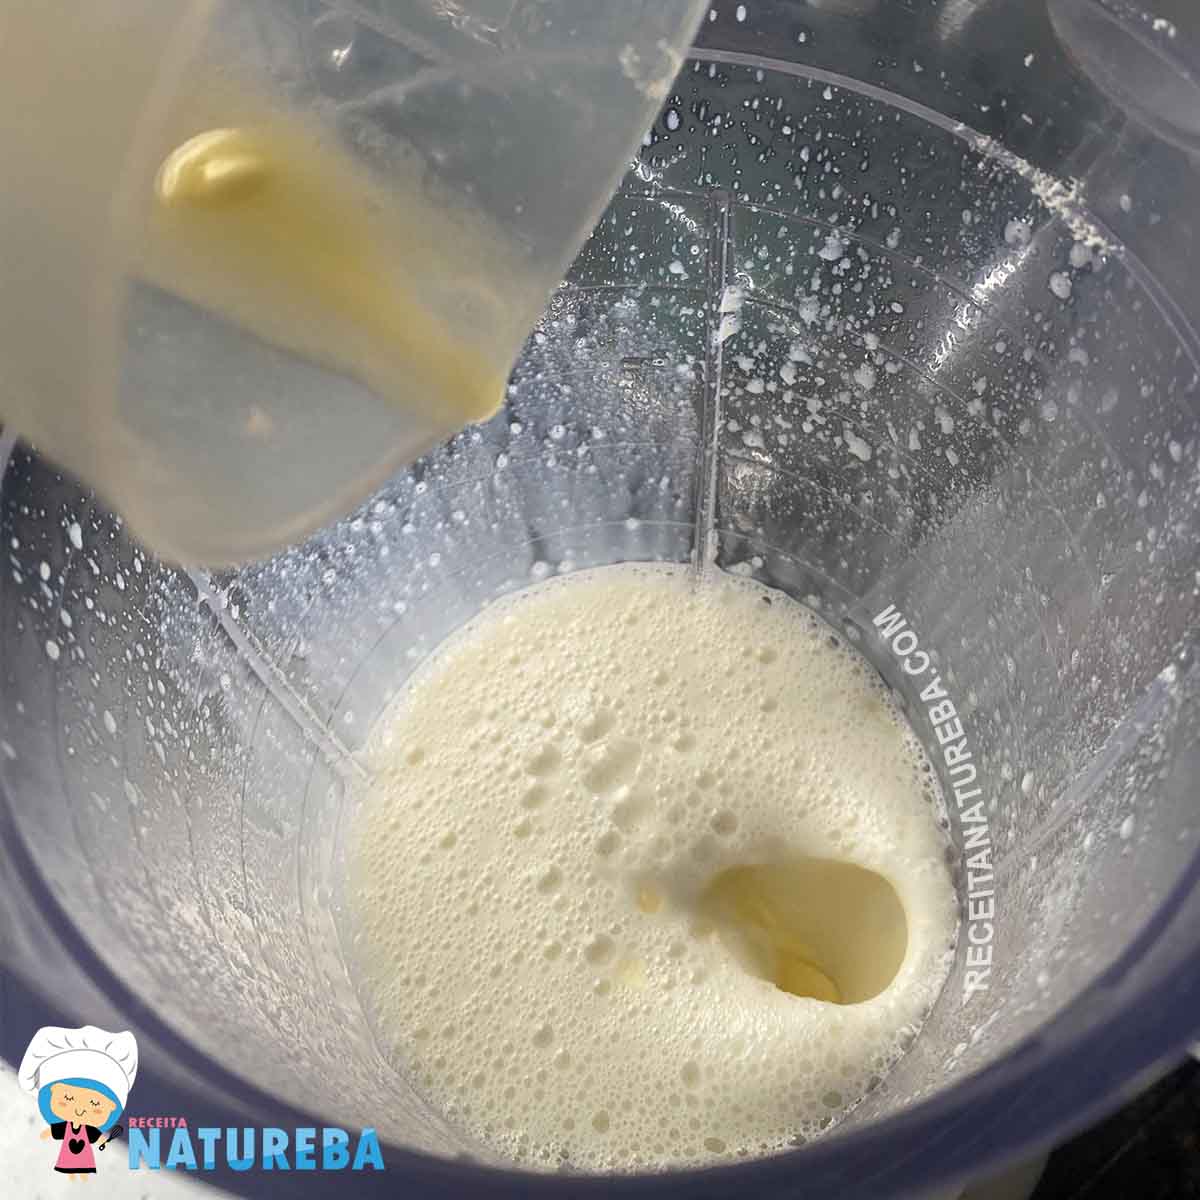 juntando a manteiga derretida no liquidificador com o leite condensado diet